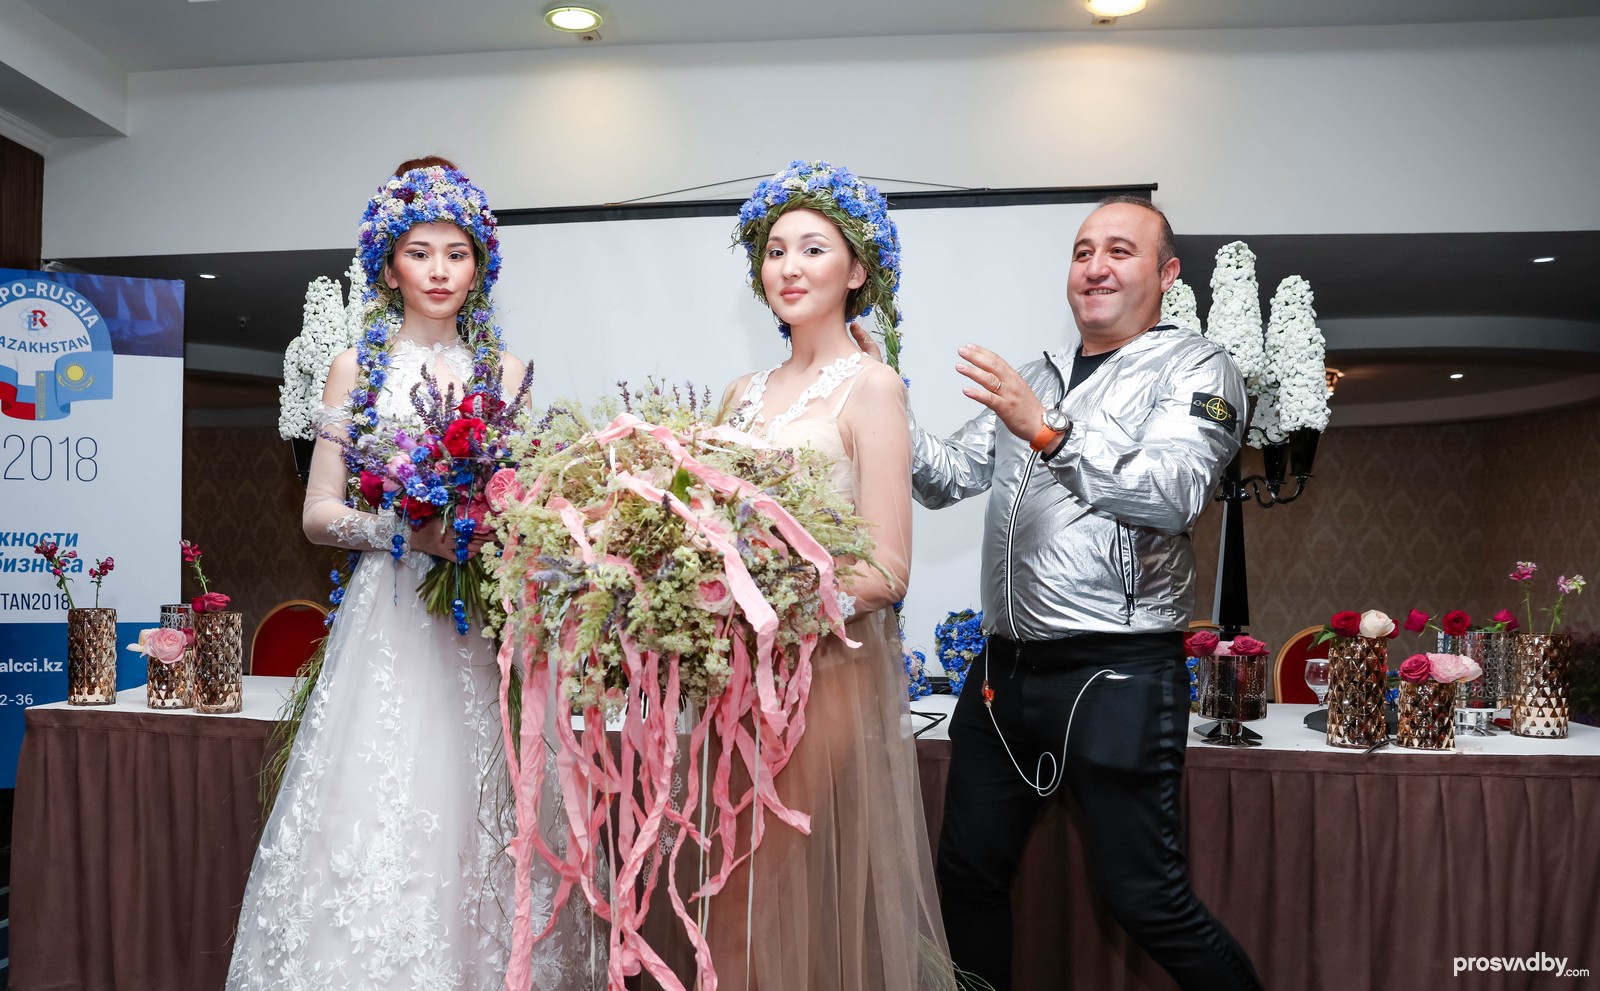 Флорист Араик Галстян демонстрируем цветочные короны и рассказывает, как добавлять в свои цветочные шедевры национальный казахстанский колорит с европейским шиком.